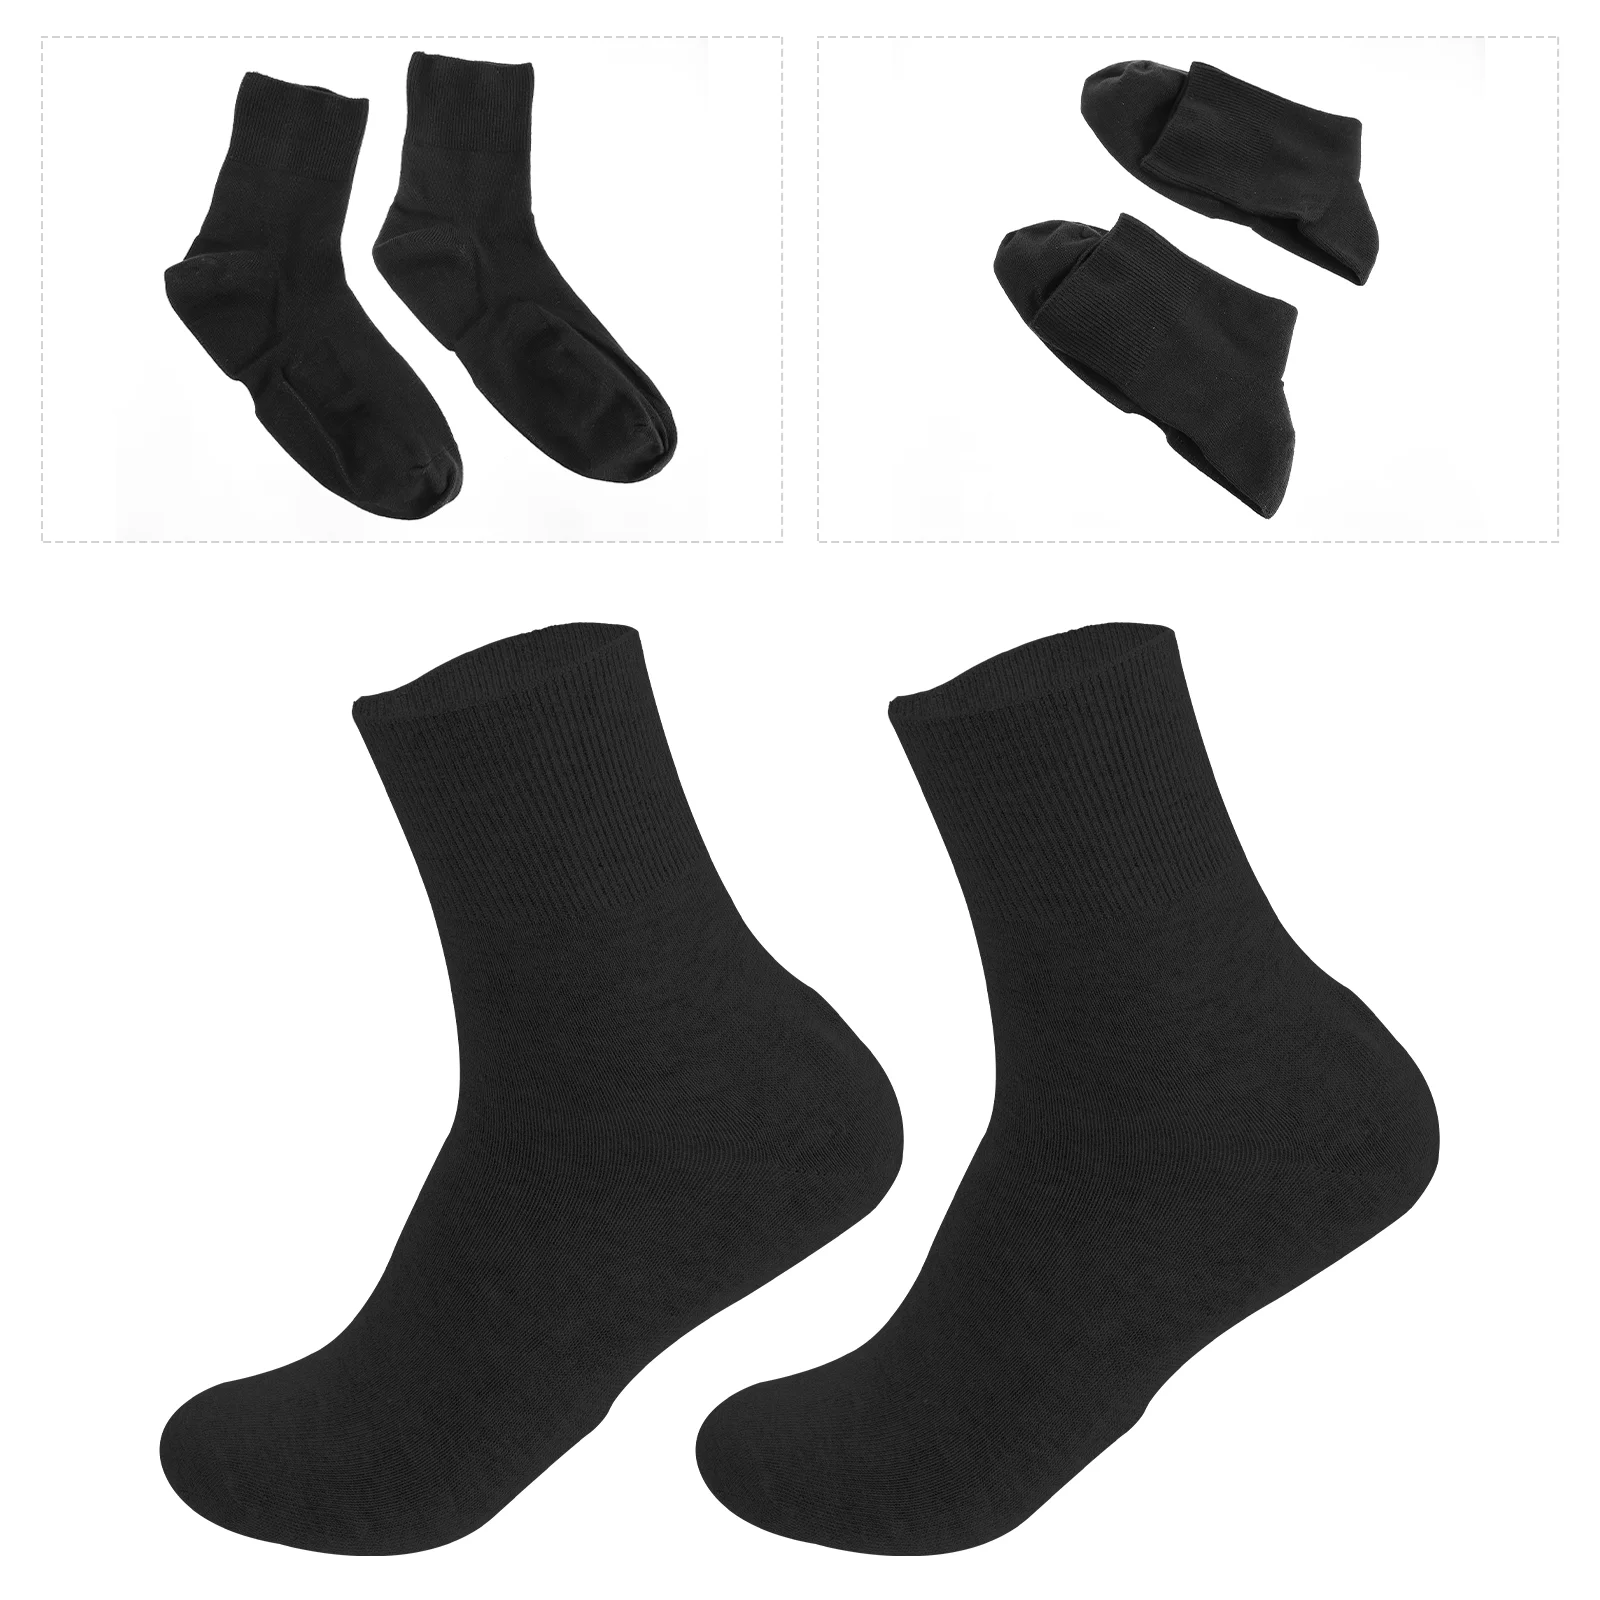 

2pcs Moisturizing Socks for Men Repairing Dry Feet Calluses Cracked Heels